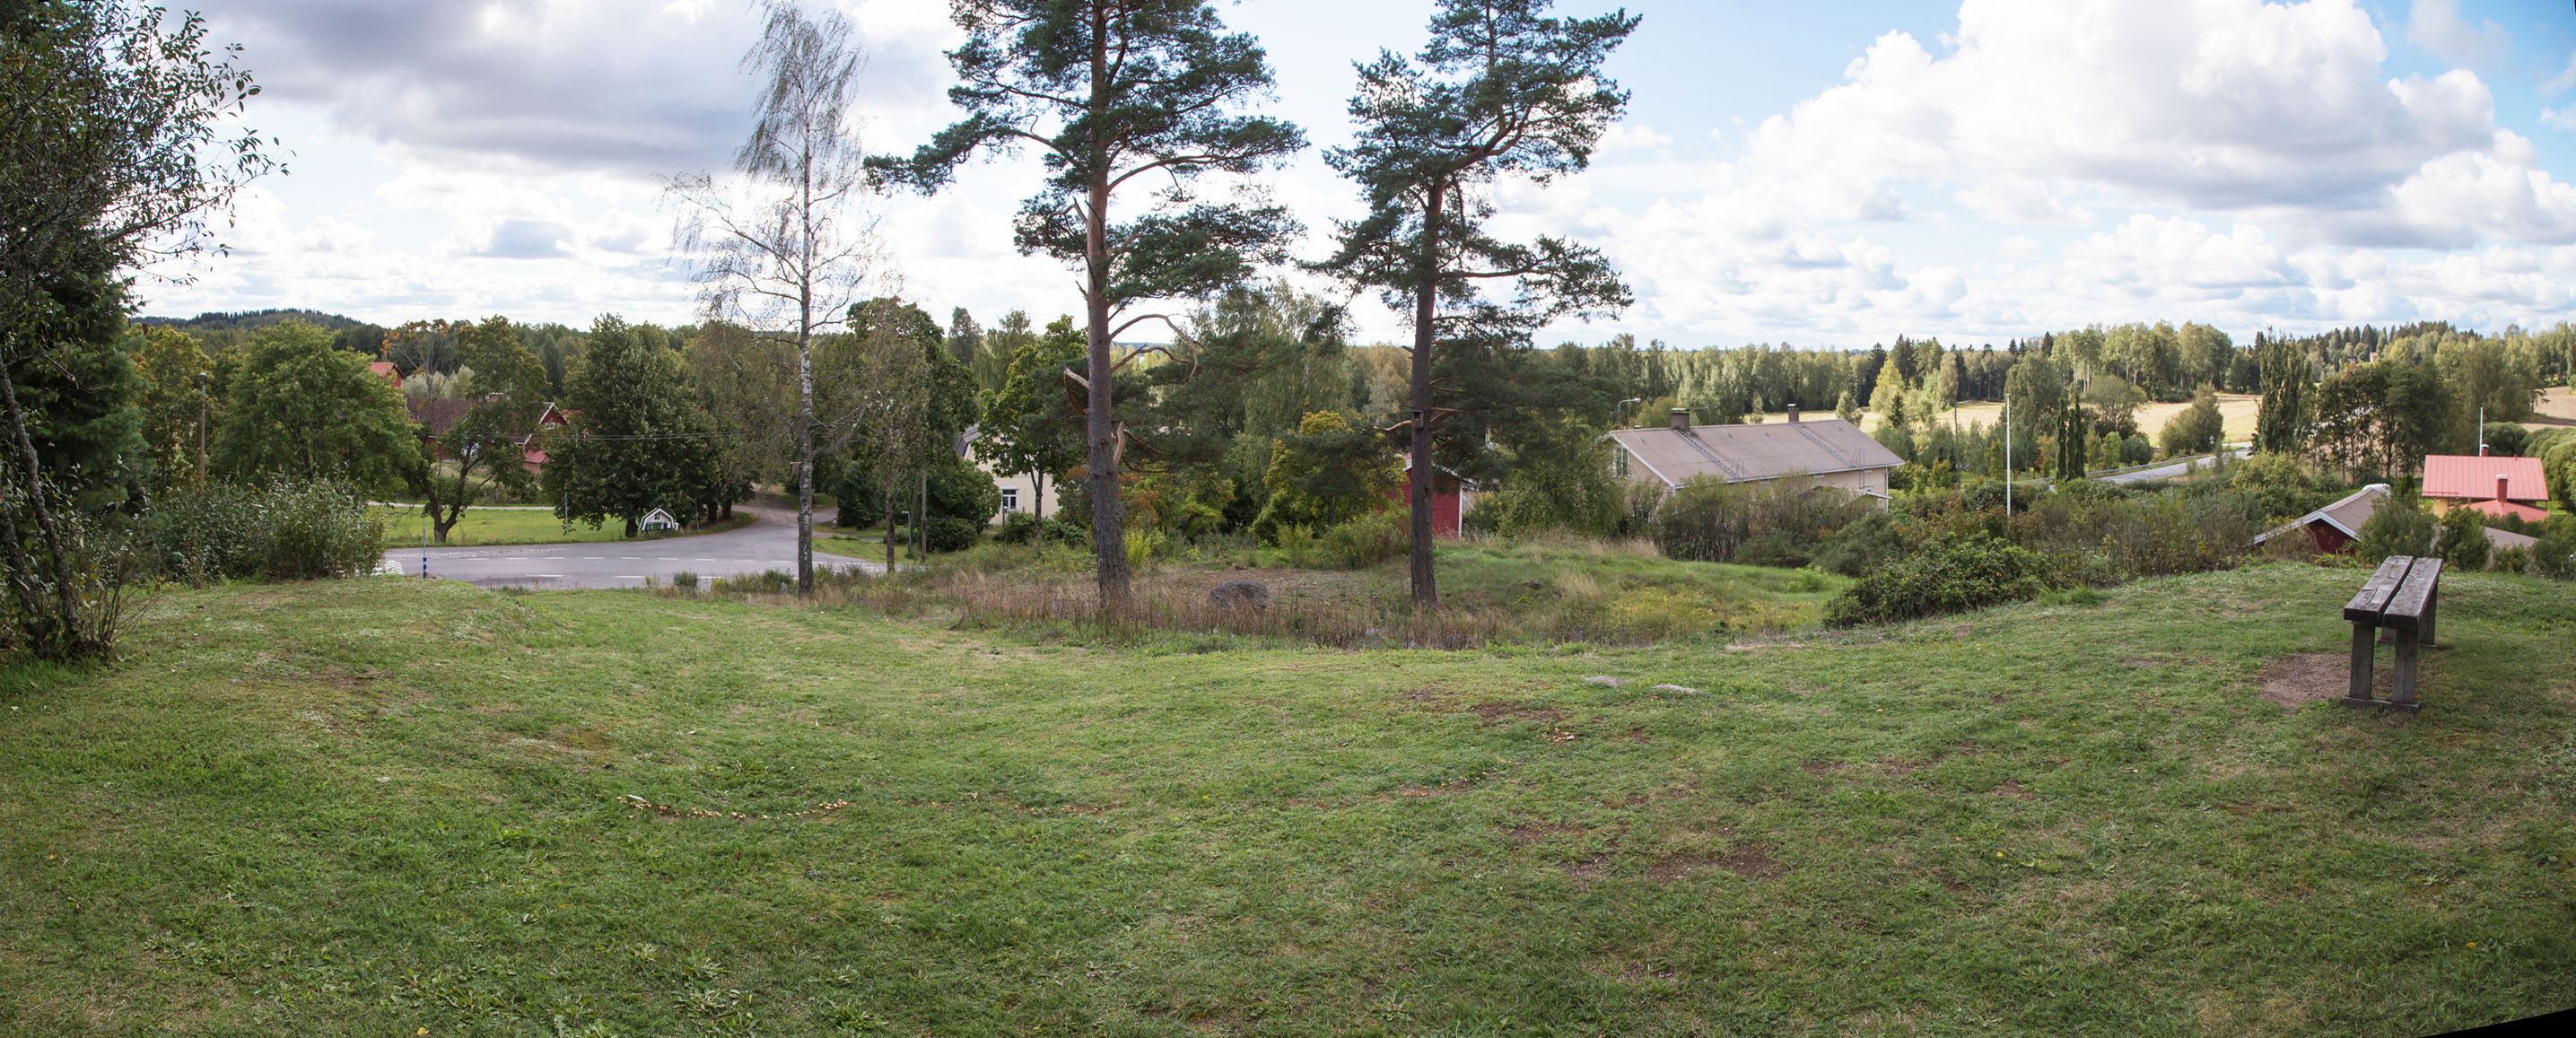 Kuva: Näkymä kirkonmäeltä etelään kohti Lopen historiallista kylänpaikkaa Helena Ranta 2.9.2021